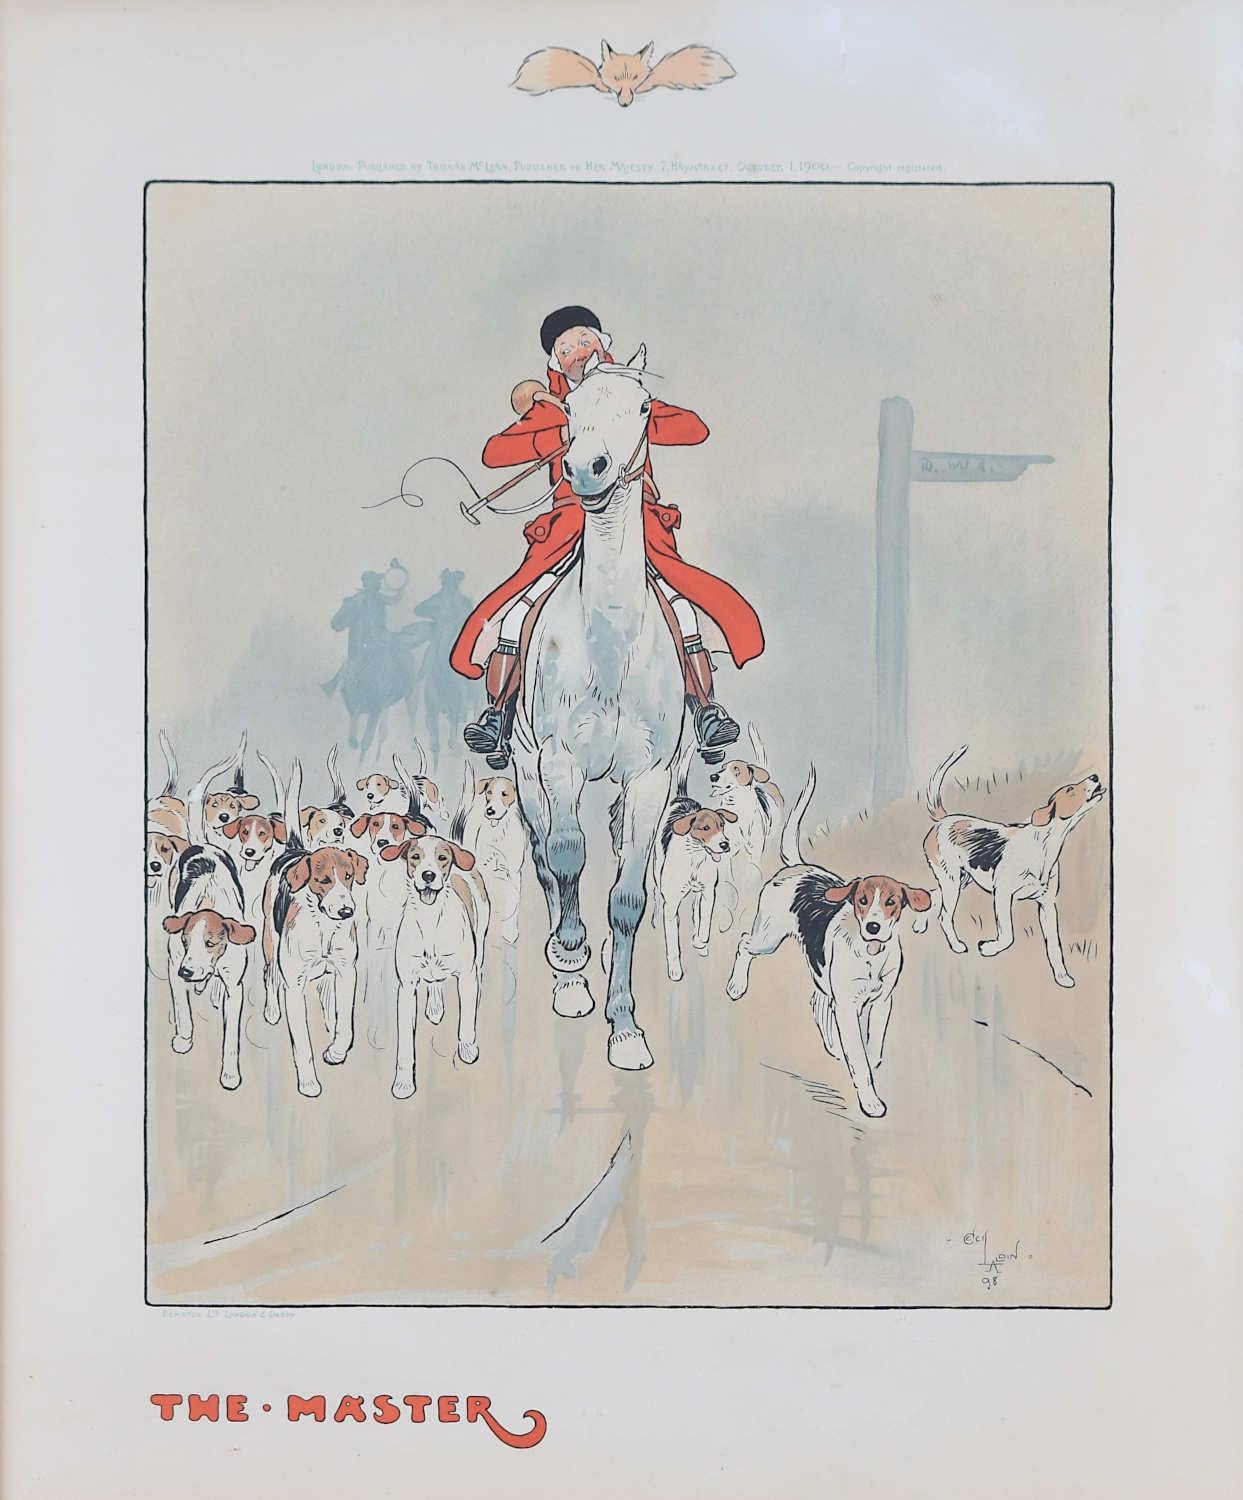 Cecil Aldine (1870 - 1935)
The Masterly
Lithographie
48 x 40 cm

Une lithographie joyeuse d'un MFH et de ses chiens.

Cecil Charles Windsor Aldine était un artiste et illustrateur britannique surtout connu pour ses peintures et croquis d'animaux, de